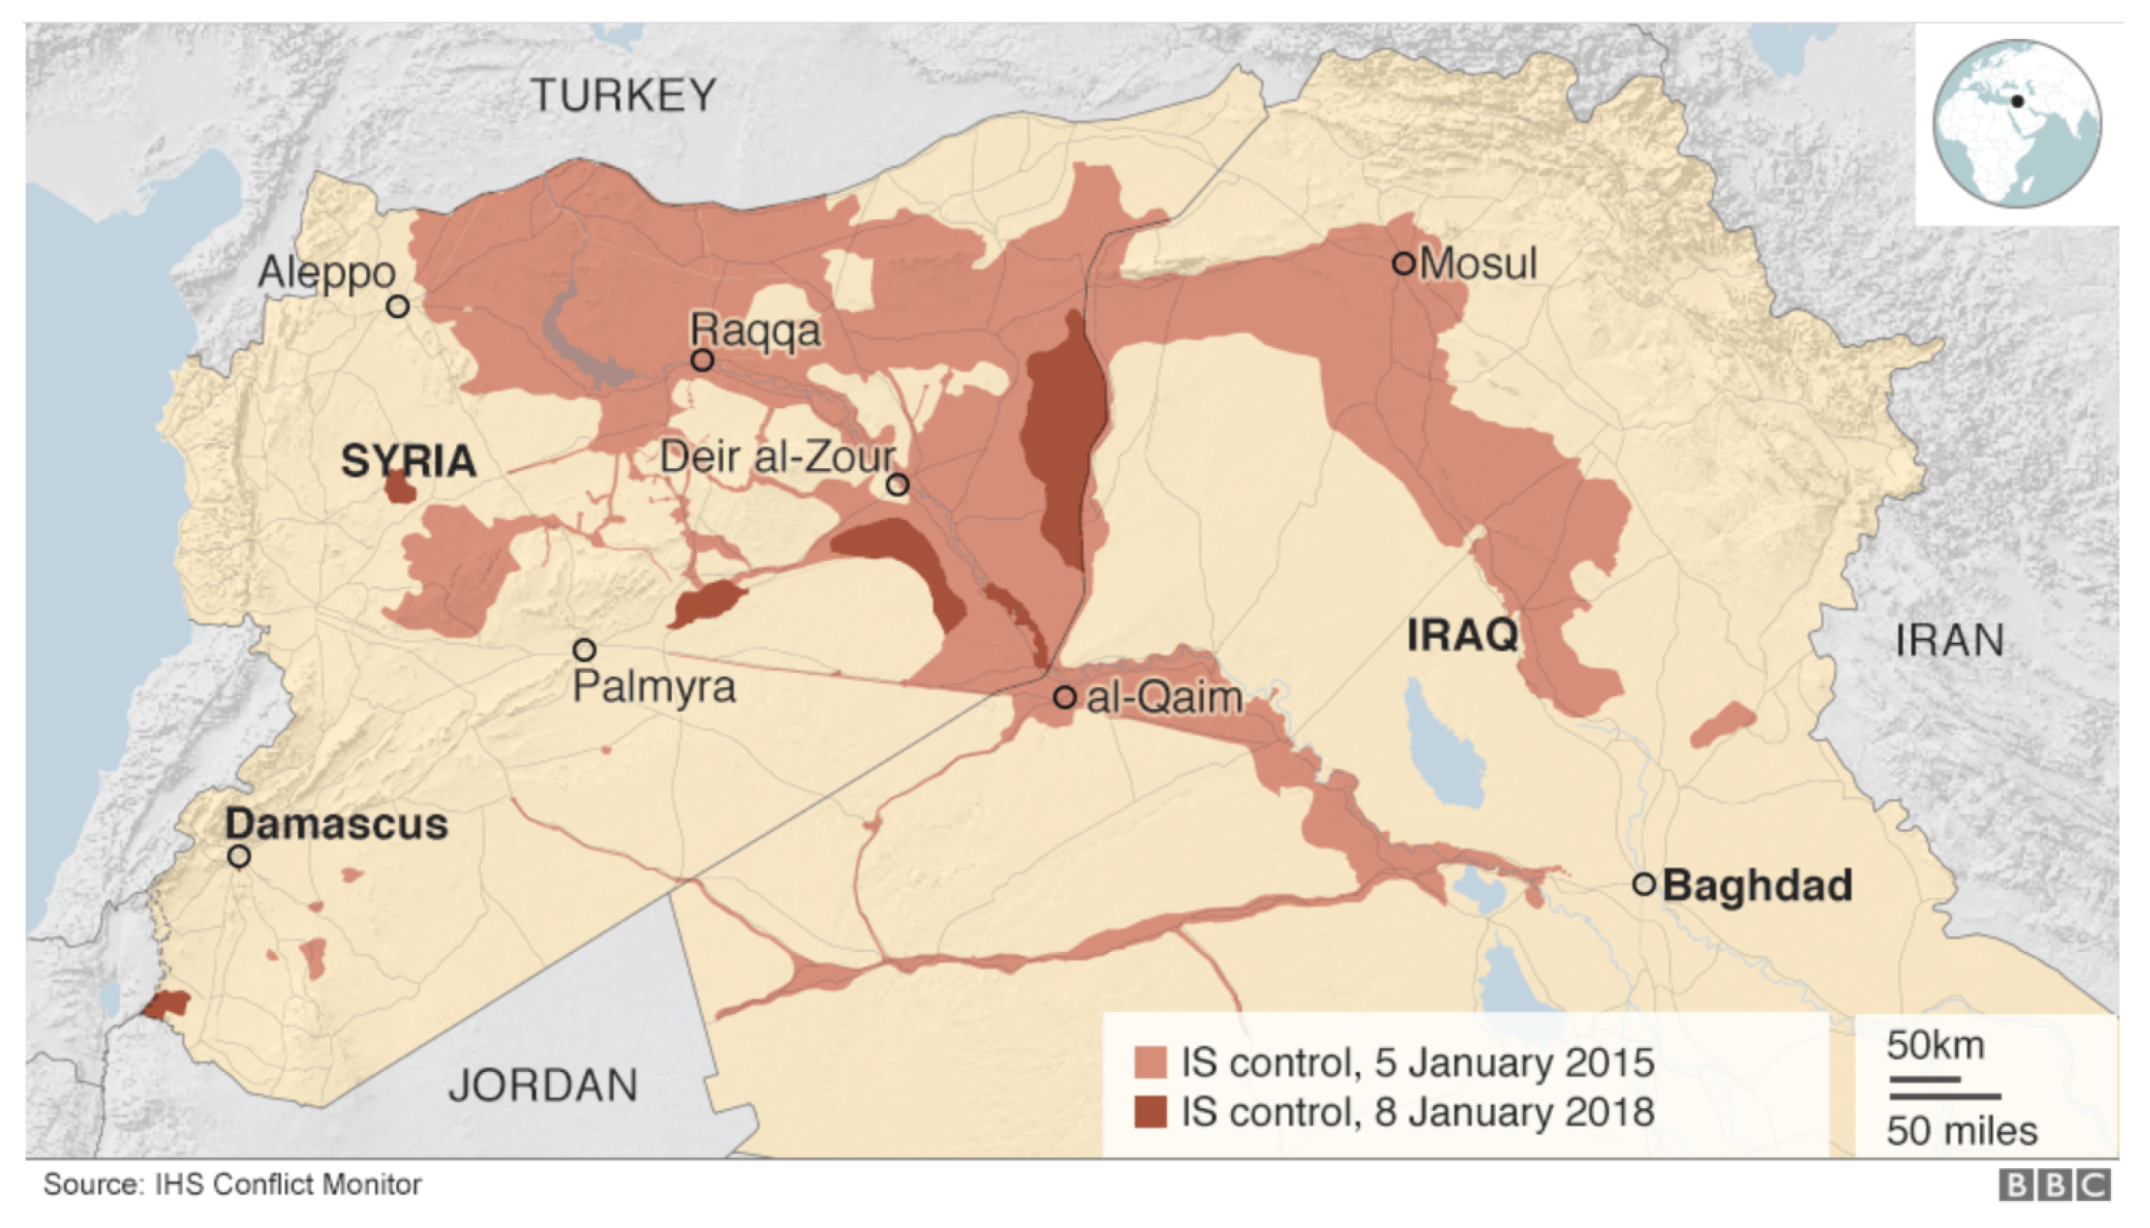 Ис территория. Ракка на карте. Isis Territory. Turkey Iraq Territory. Карта ИГИЛ 2016 Пальмира.